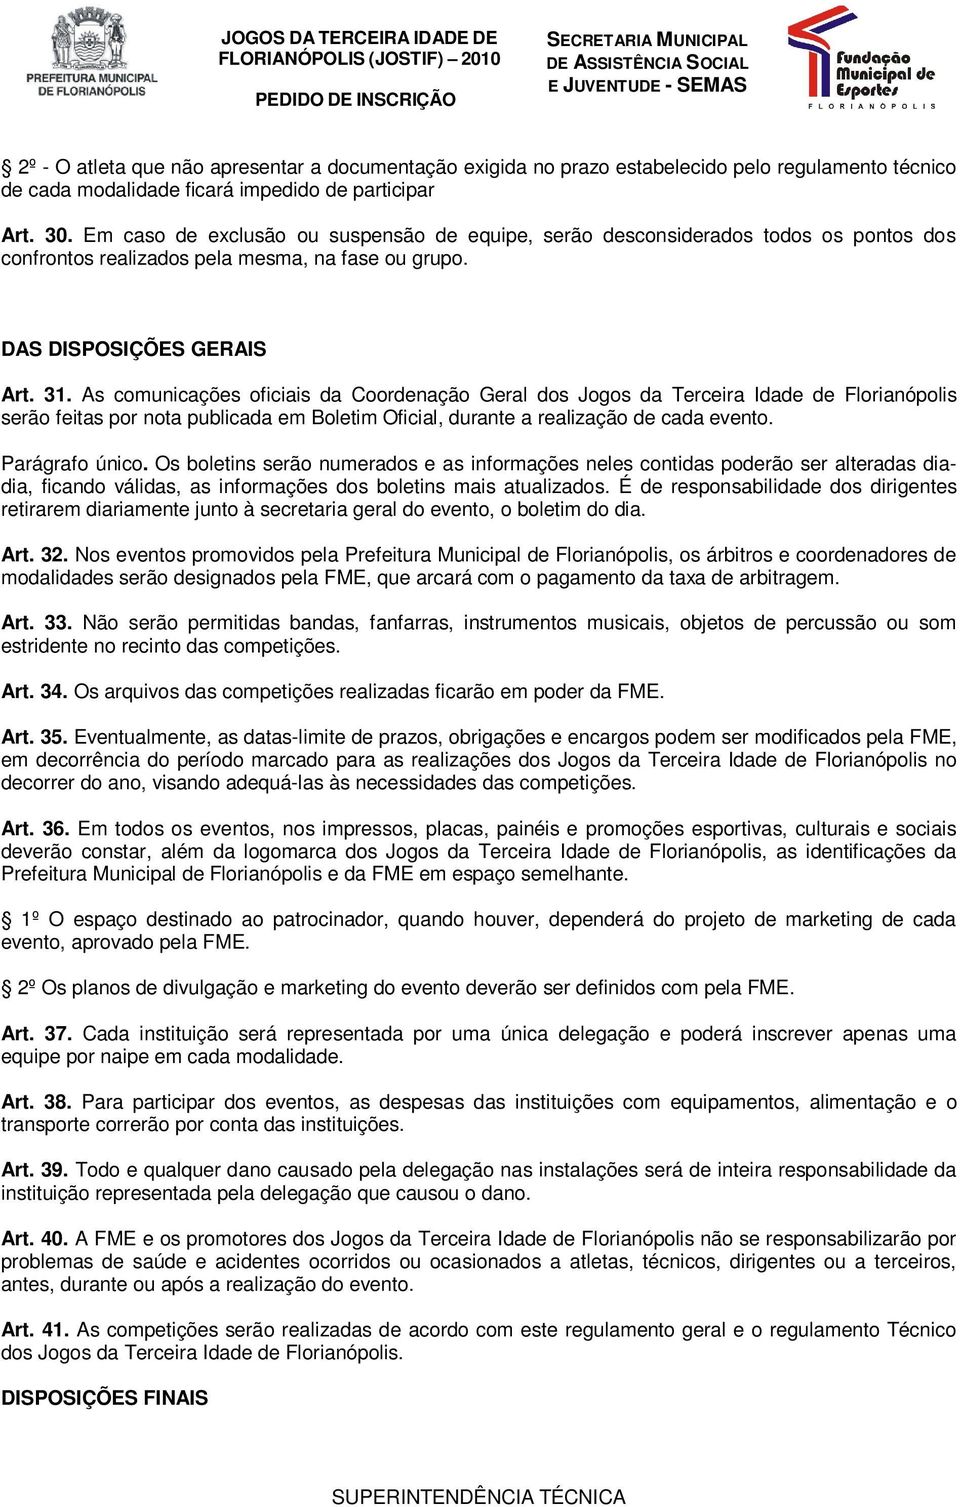 As comunicações oficiais da Coordenação Geral dos Jogos da Terceira Idade de Florianópolis serão feitas por nota publicada em Boletim Oficial, durante a realização de cada evento. Parágrafo único.